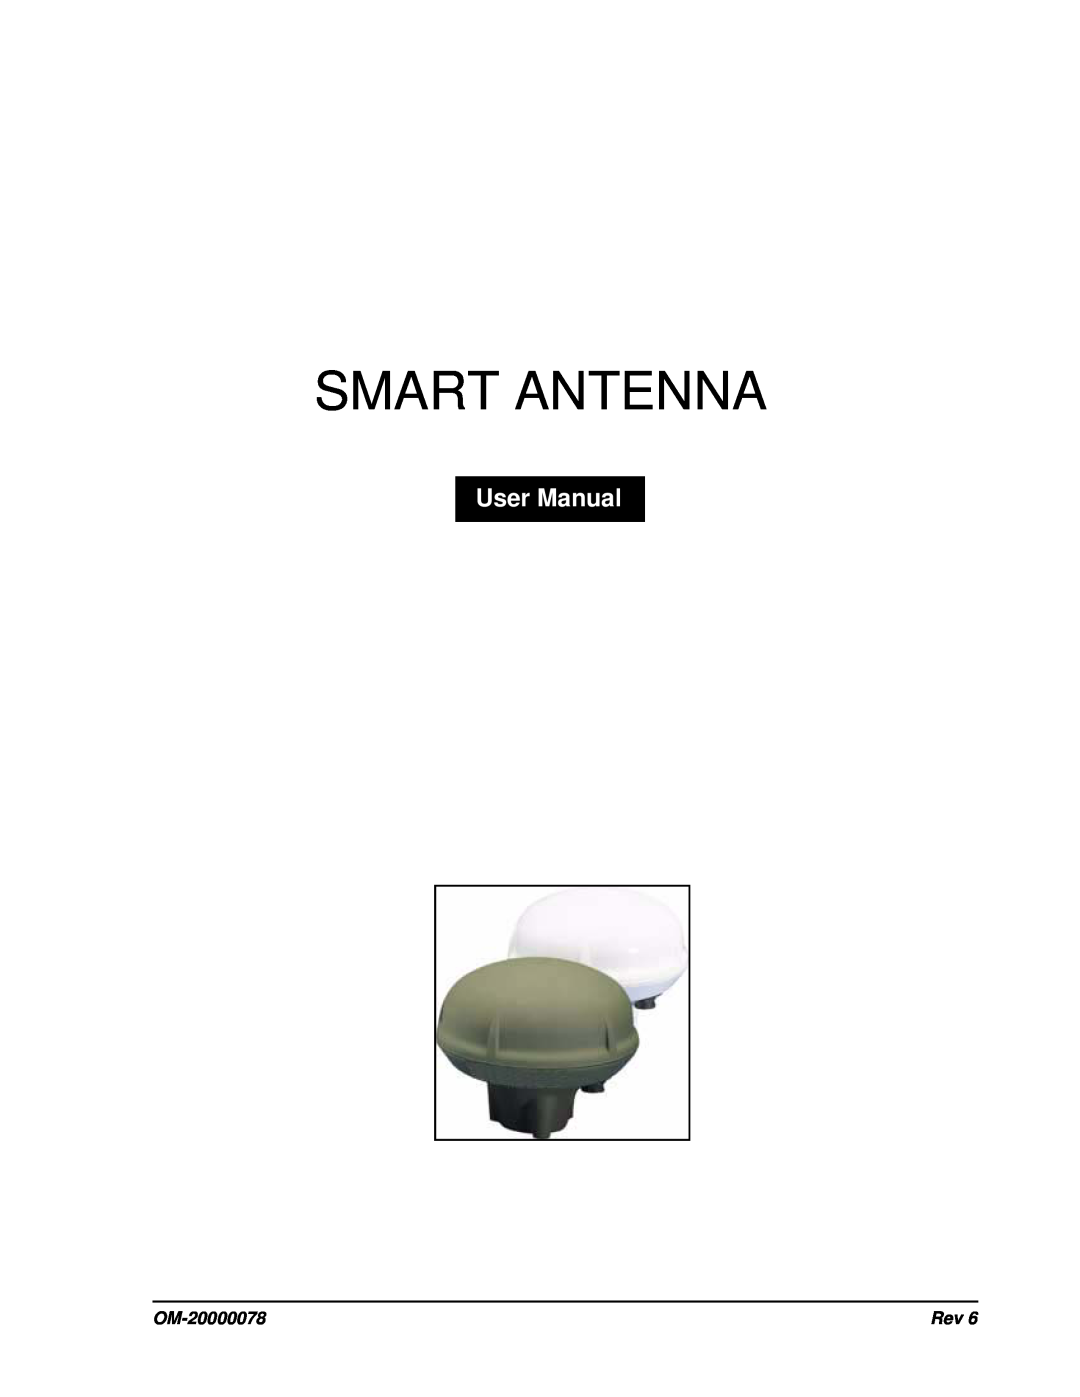 Novatel SMART ANTENNA user manual Smart Antenna, OM-20000078 